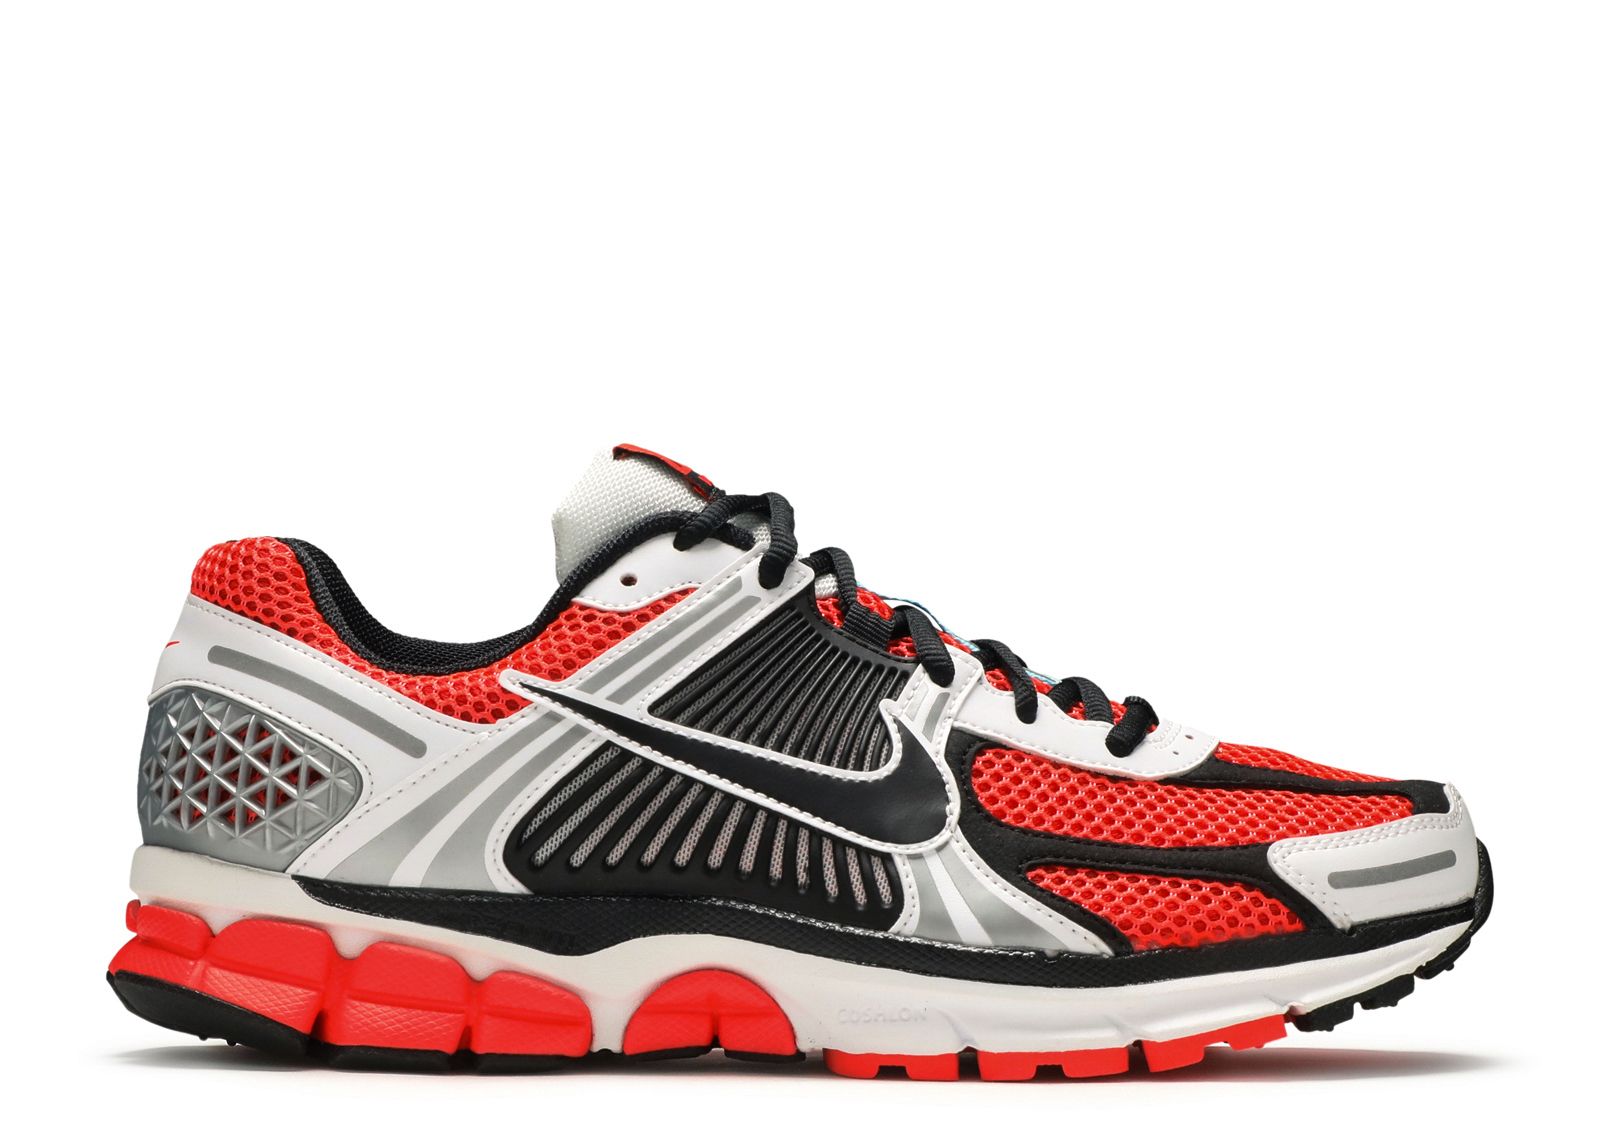 Air Zoom Vomero 5 SE 'Bright Crimson' - Nike - CZ8667 600 - bright ...